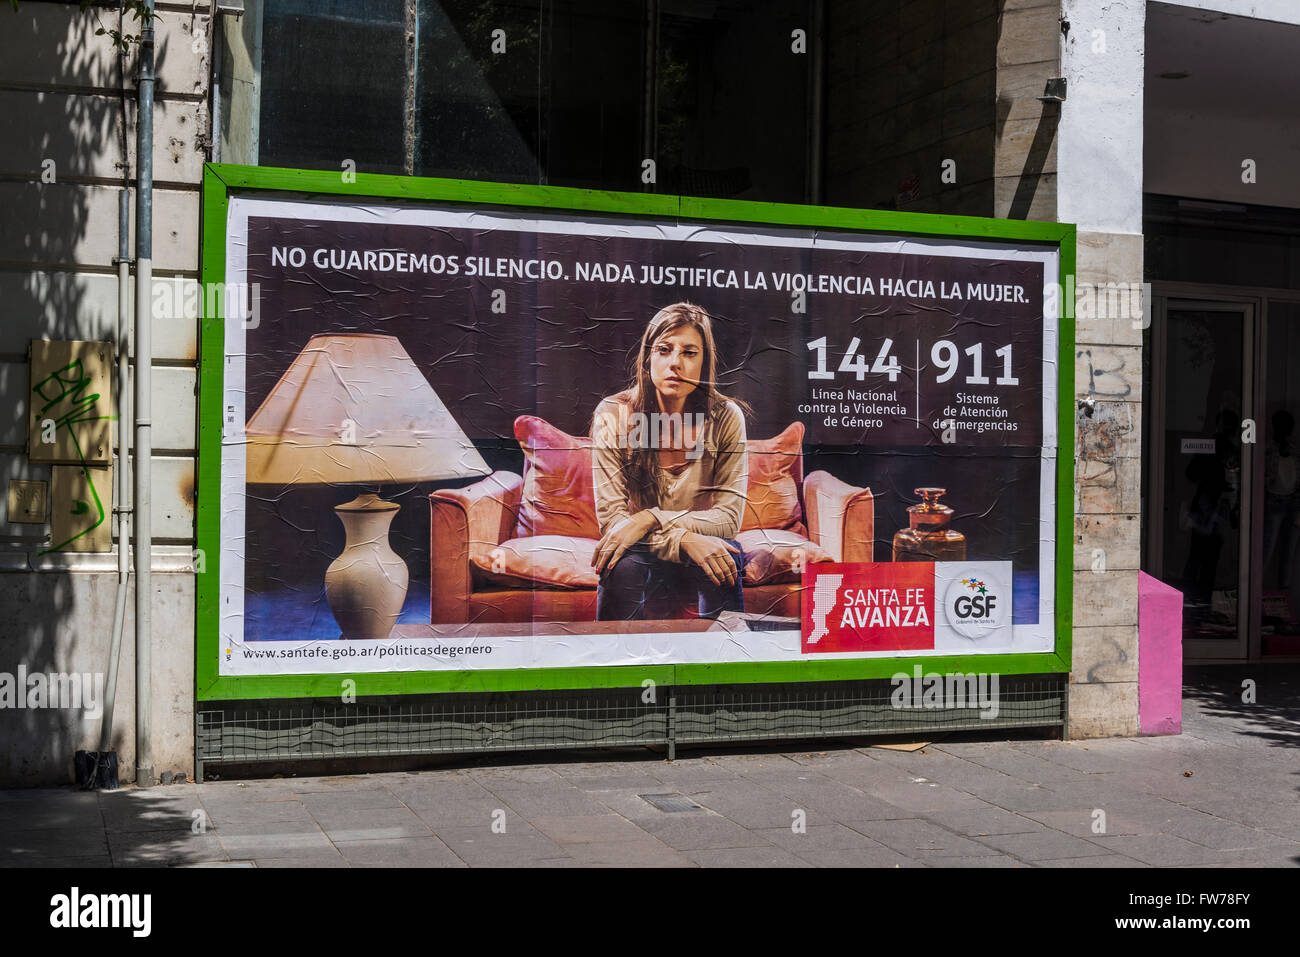 Campaña de vallas publicitarias del gobierno contra la violencia doméstica, Rosario, Santa Fe, Argentina Foto de stock